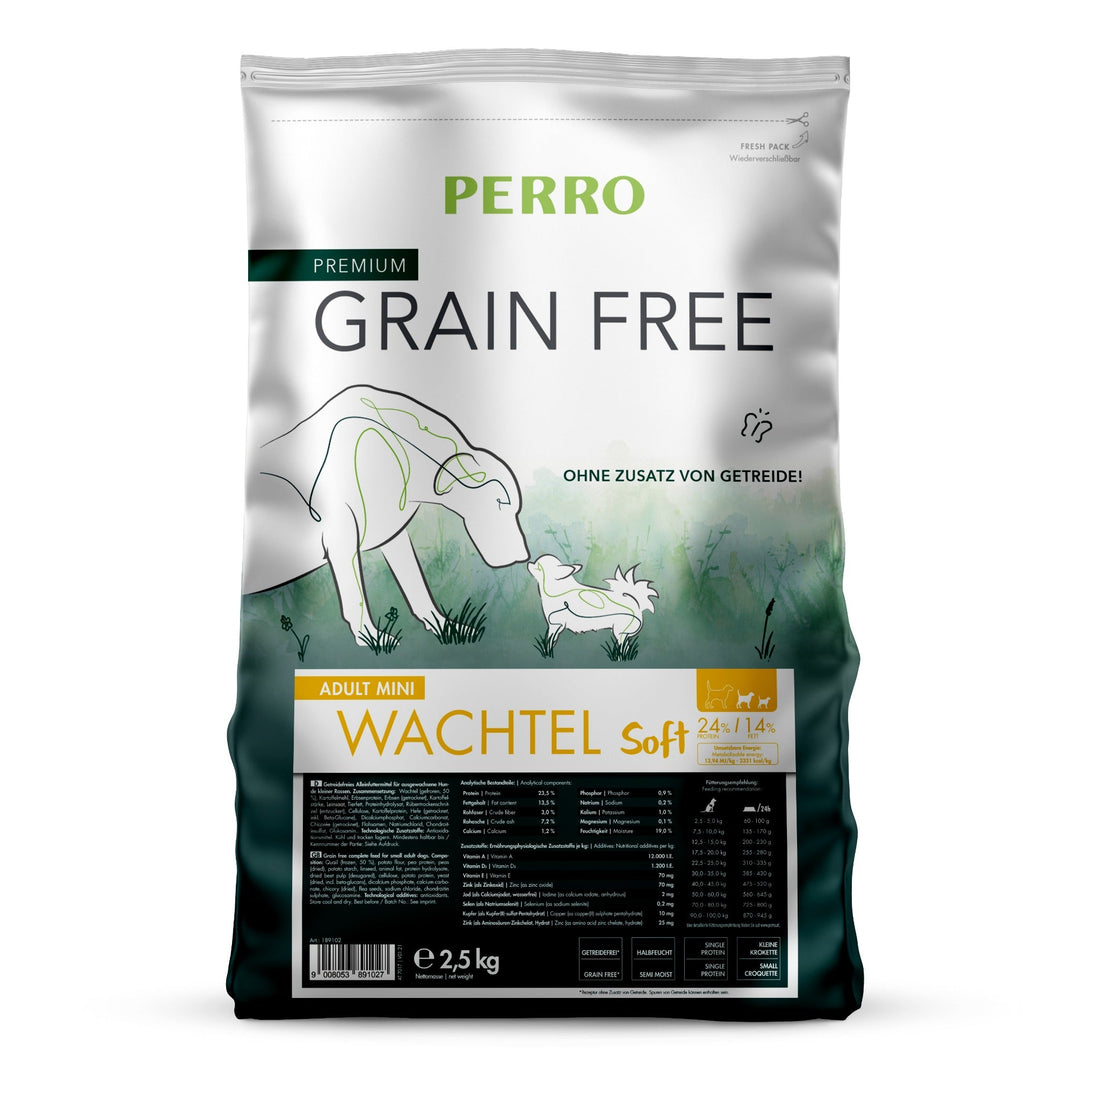 Perro Grain Free Adult Mini Wachtel Soft - Hunde Trockenfutter - Woofshack